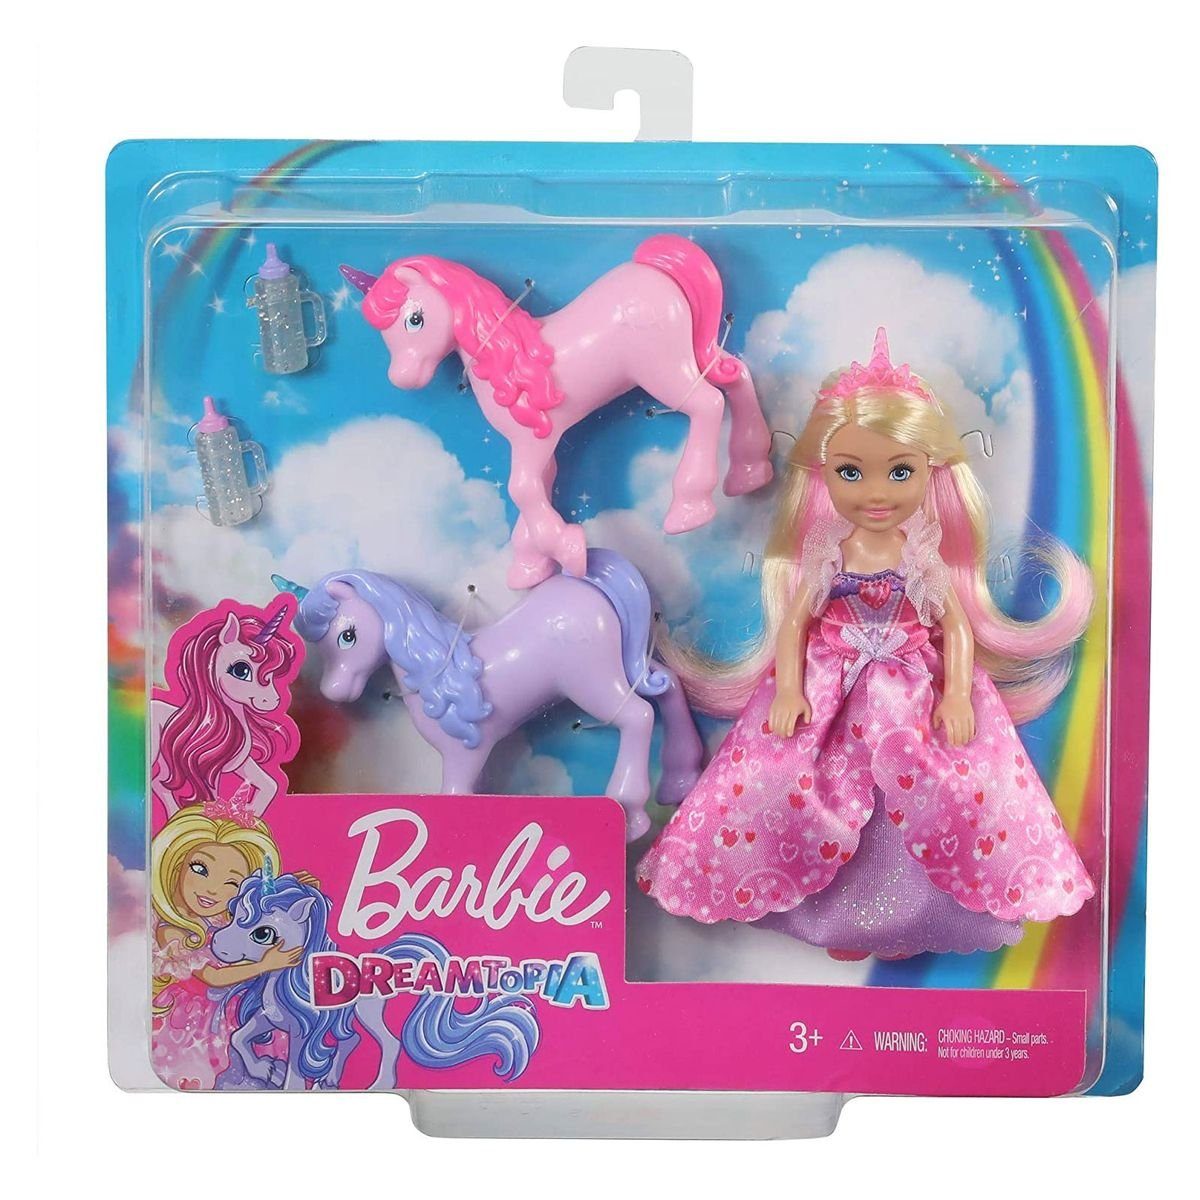 mit Mattel - Puppen Accessoires-Set Mattel® Chelsea 2 Einhörnern Dreamtopia GJK17 Barbie Prinzessin-Puppe -